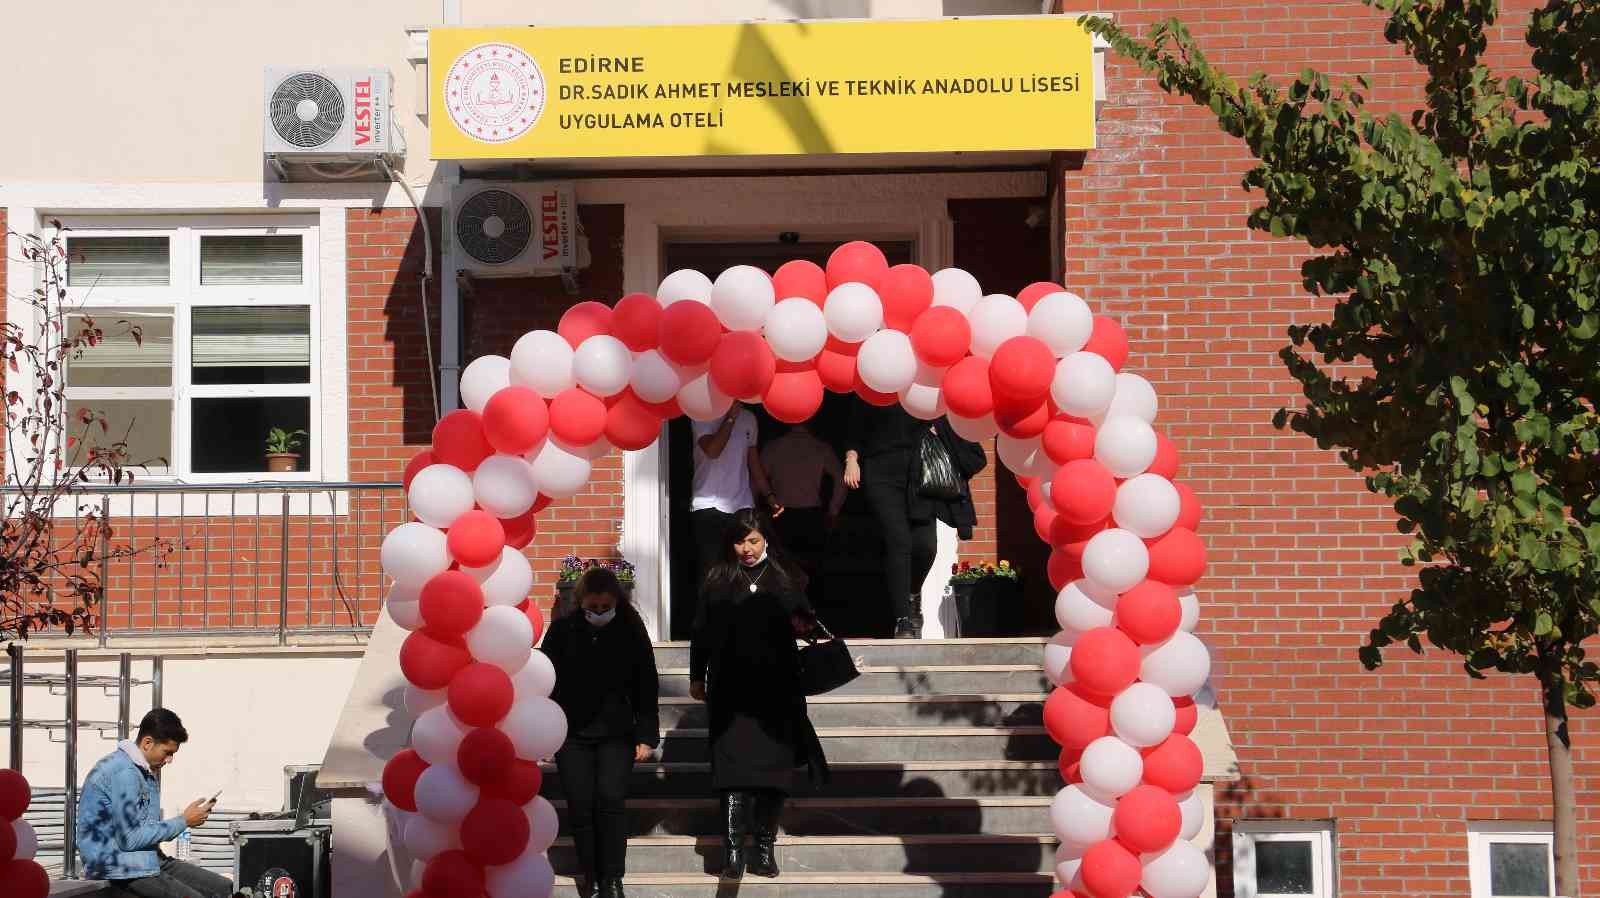 Edirne Dr. Sadık Ahmet Mesleki Teknik ve Anadolu Lisesi Uygulamalı Oteli törenle açıldı #edirne